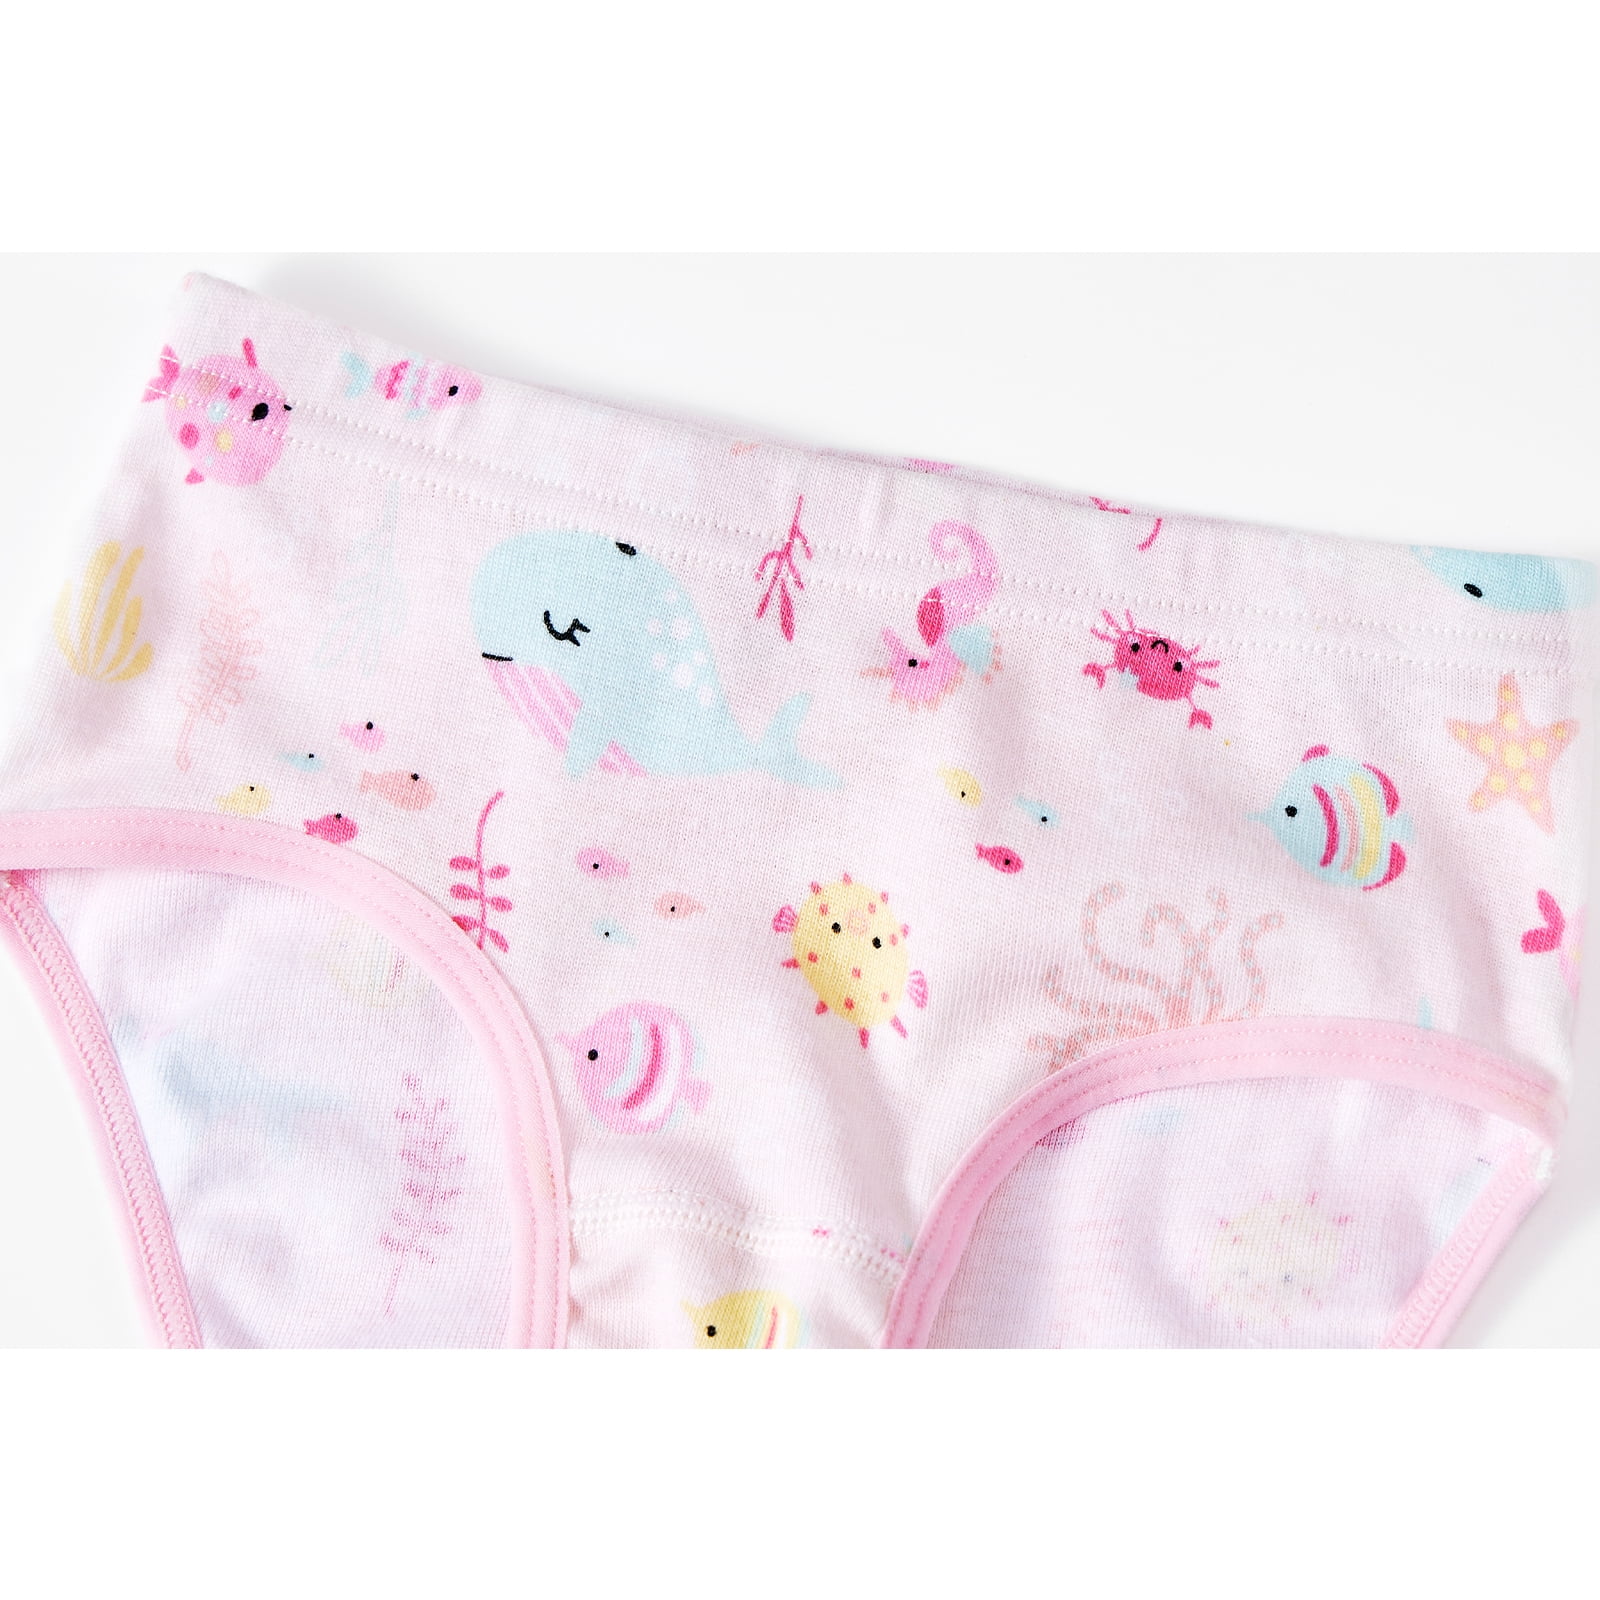 Kids Children Baby Girls Underwear Cute Print Underwear Shorts Pants Cotton  Briefs Trunks 3PCS 14/16 Girls Clothes Digital Baby Underwear 